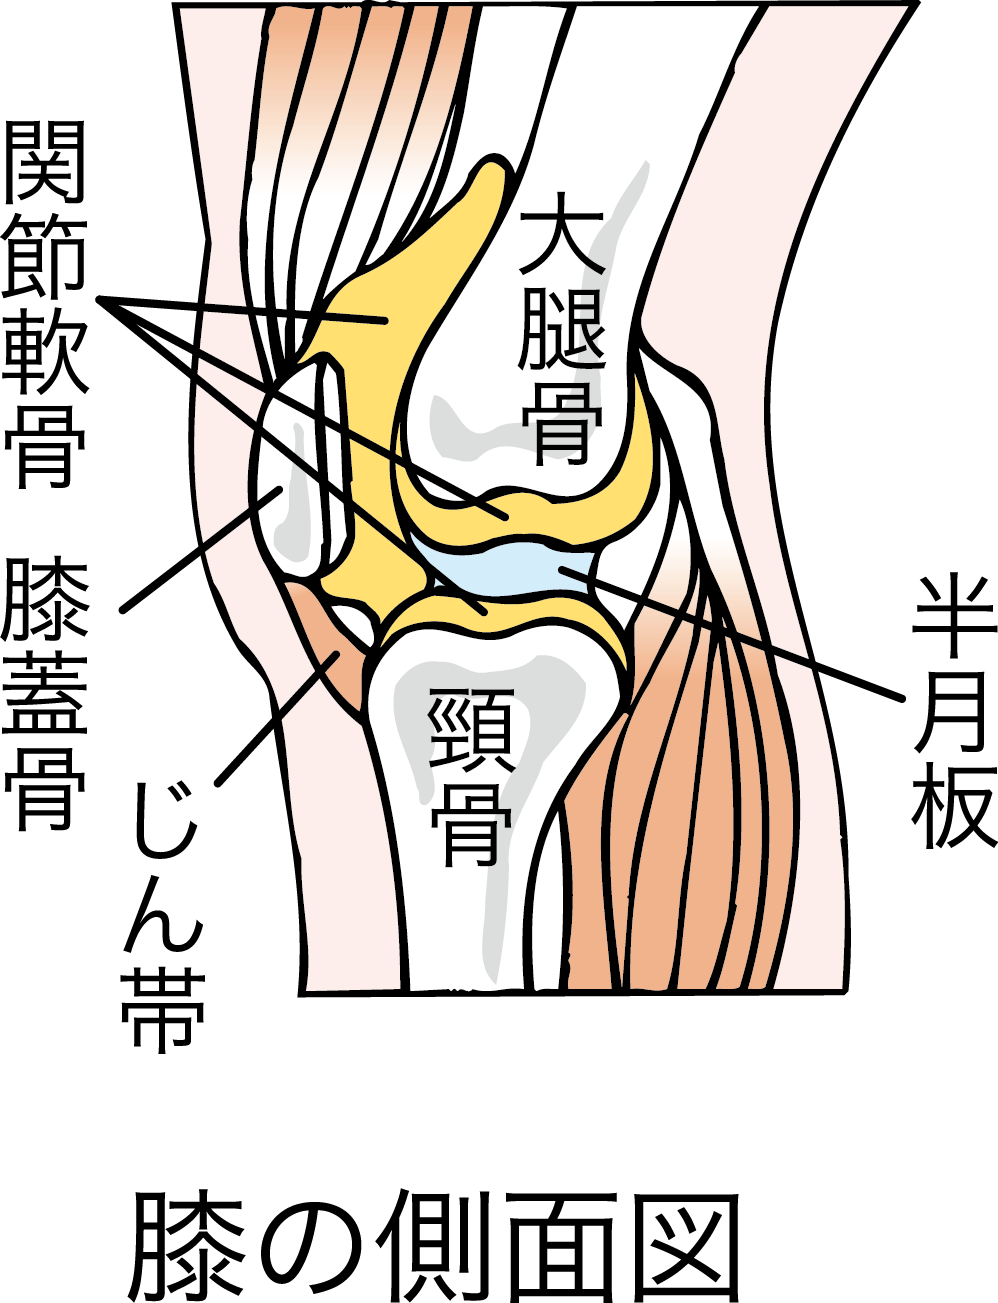 膝をつくと痛い 膝をつくと痛い場合に考えられる８つの病名 リペアセルクリニック大阪院